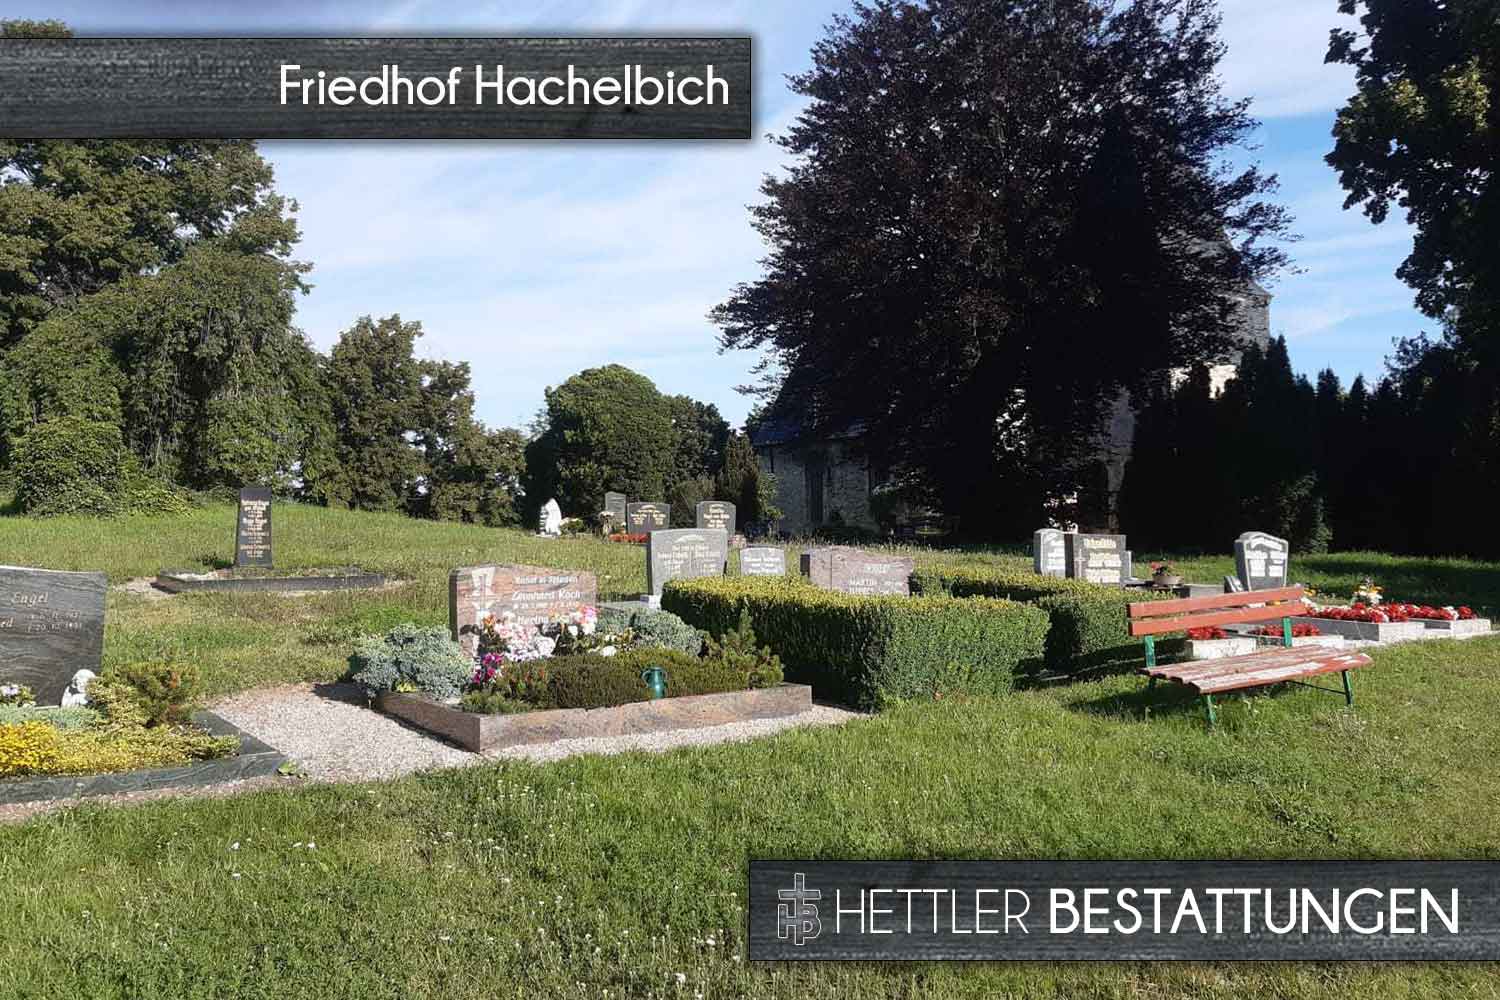 Friedhof in Hachelbich. Ihr Ort des Abschieds mit Hettler Bestattungen.